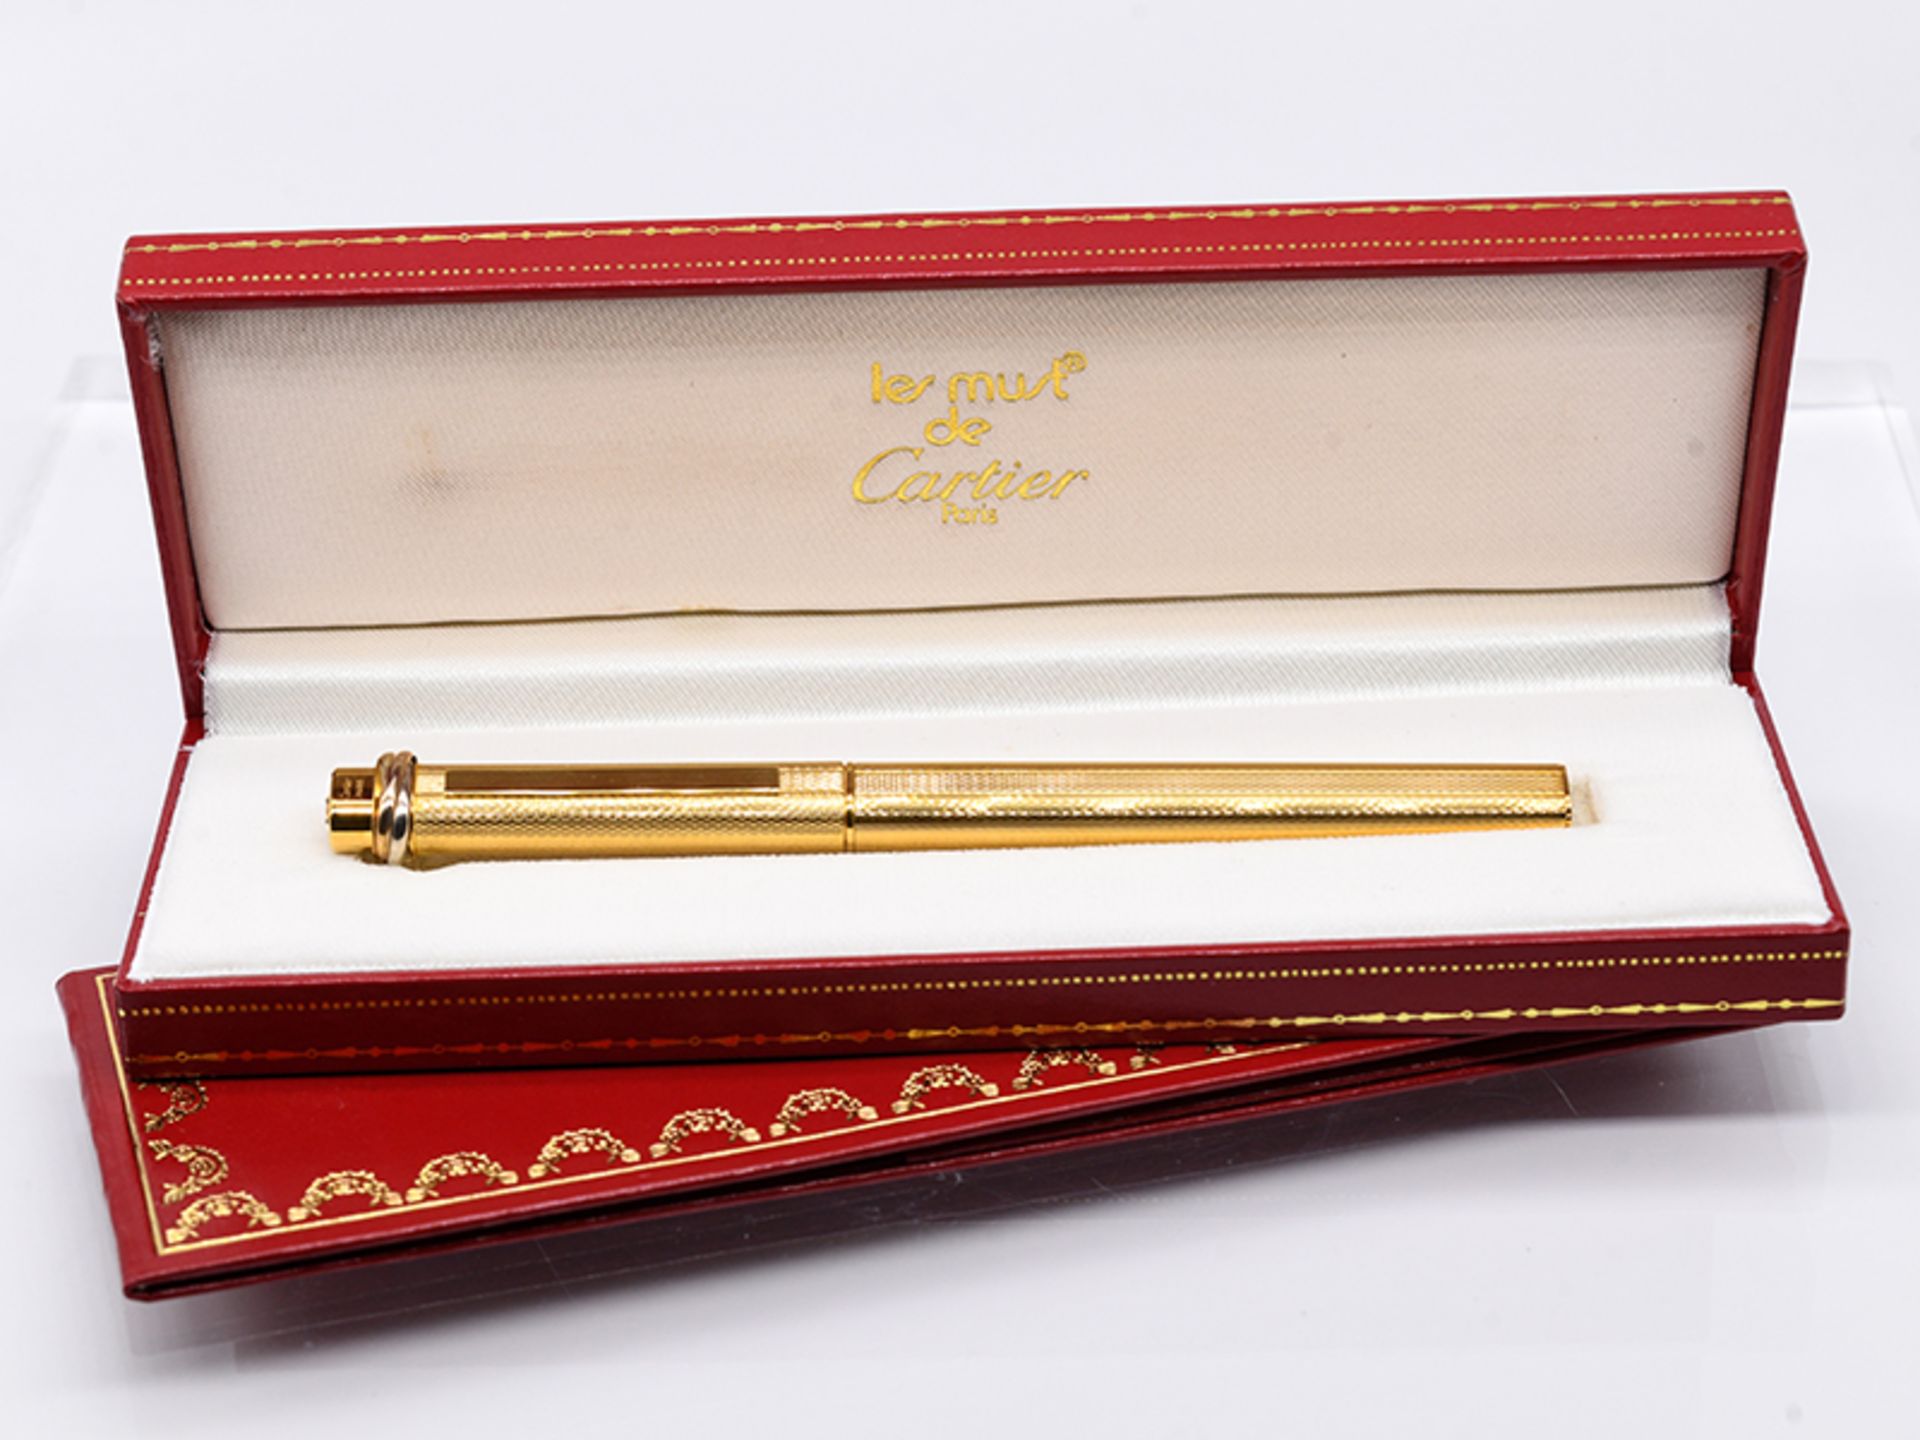 Cartier-Kugelschreiber "Vendome", Paris, 20. Jh. Vergoldet. Oval. Oben an der Hülle mit dem